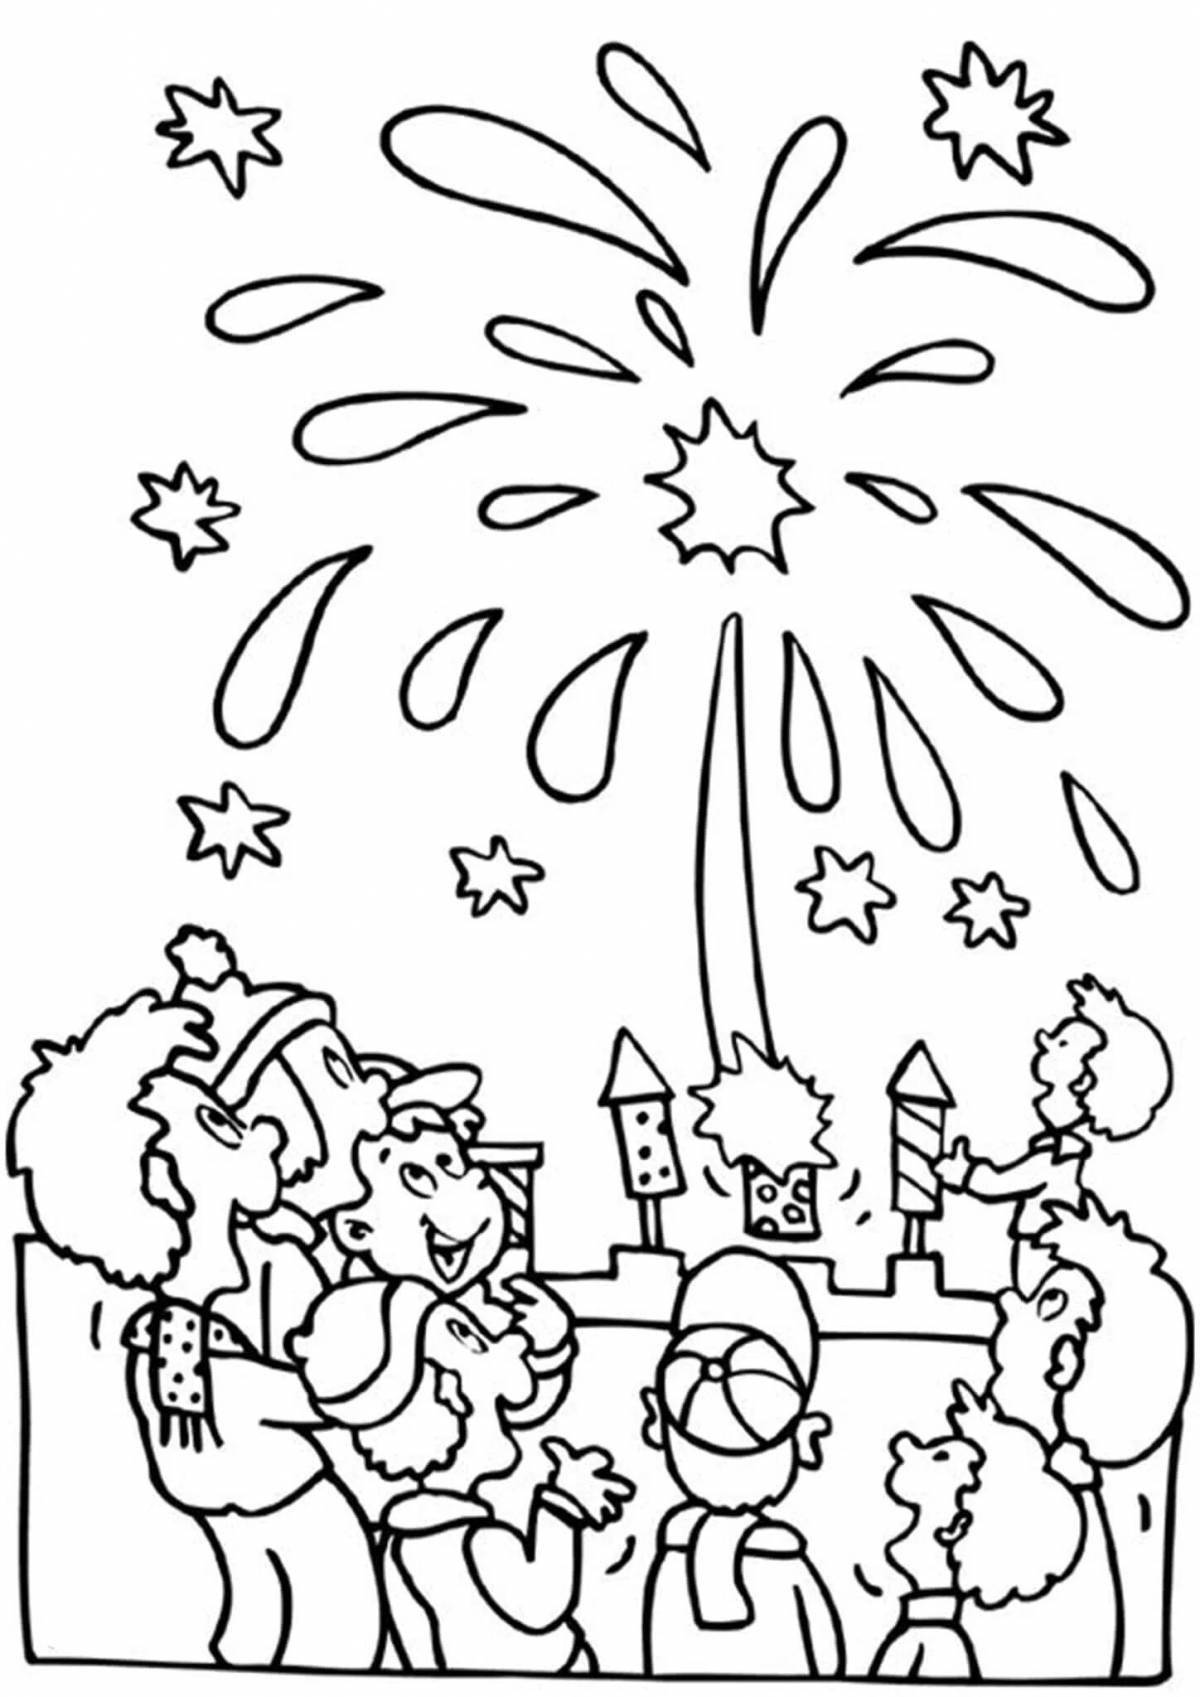 Sparkle firecracker coloring book